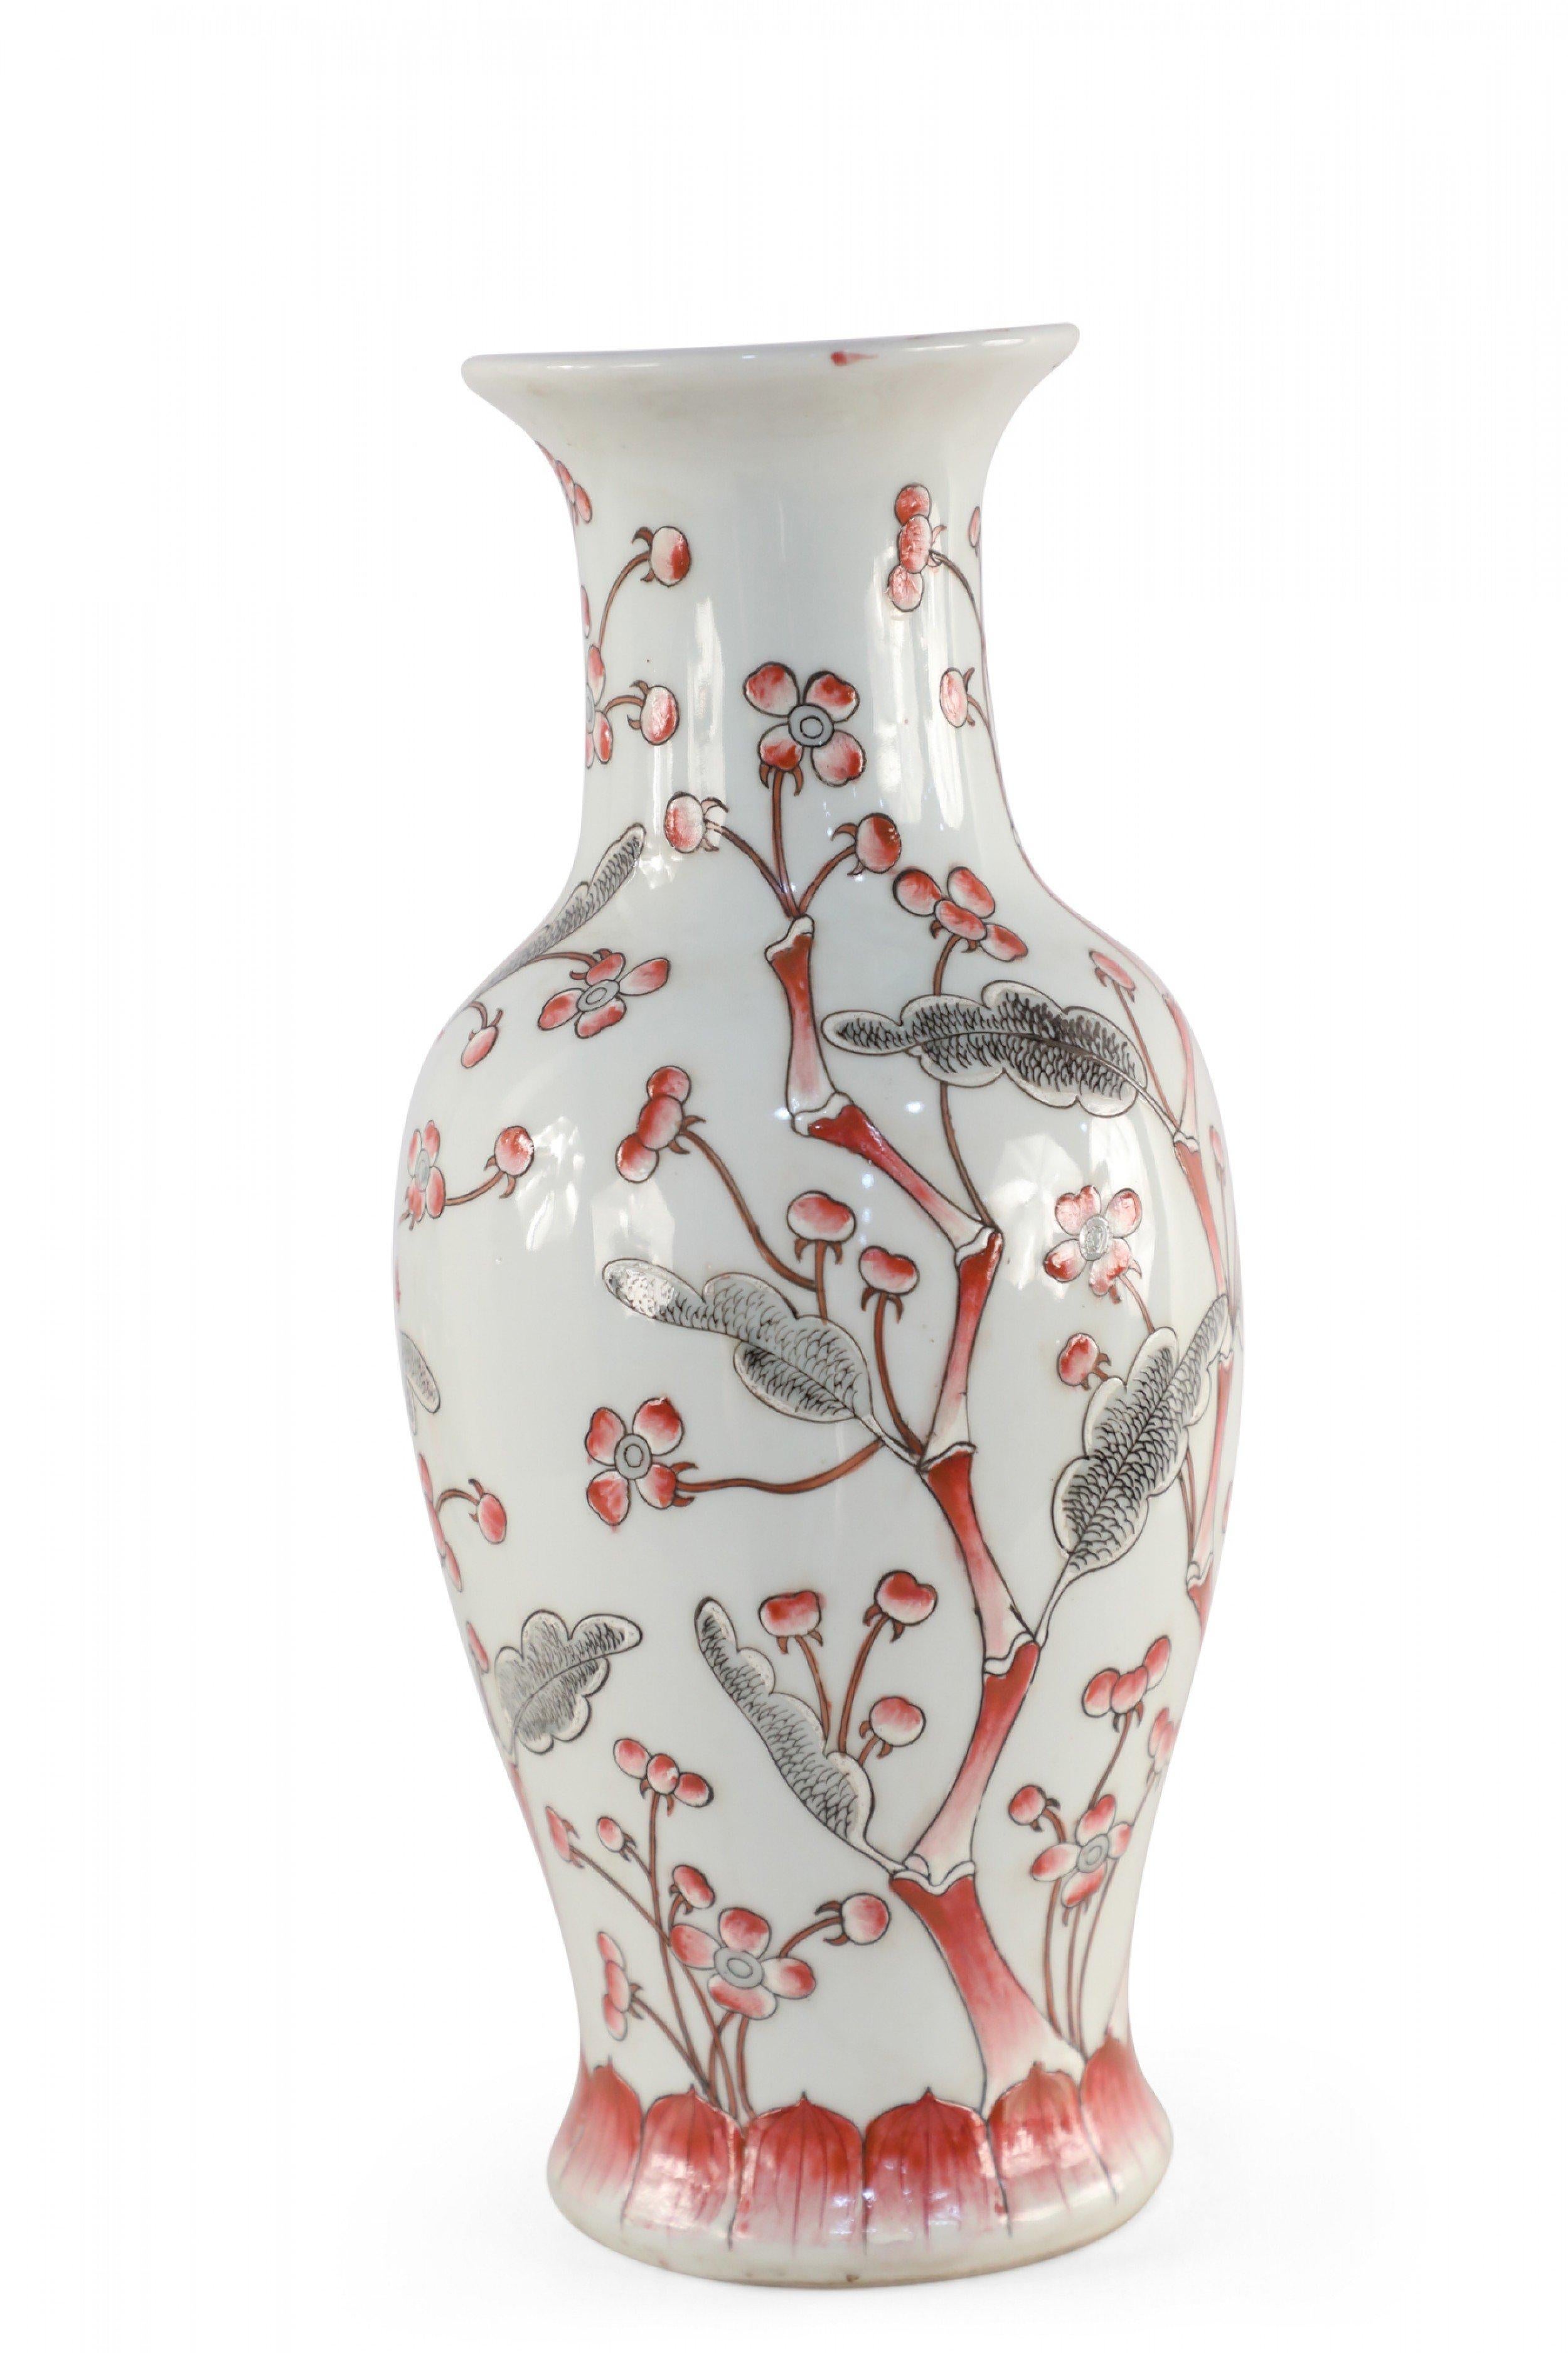 Vase chinois en porcelaine gris clair avec un cerisier en fleurs rouge et gris s'étirant sur sa forme d'urne.
  